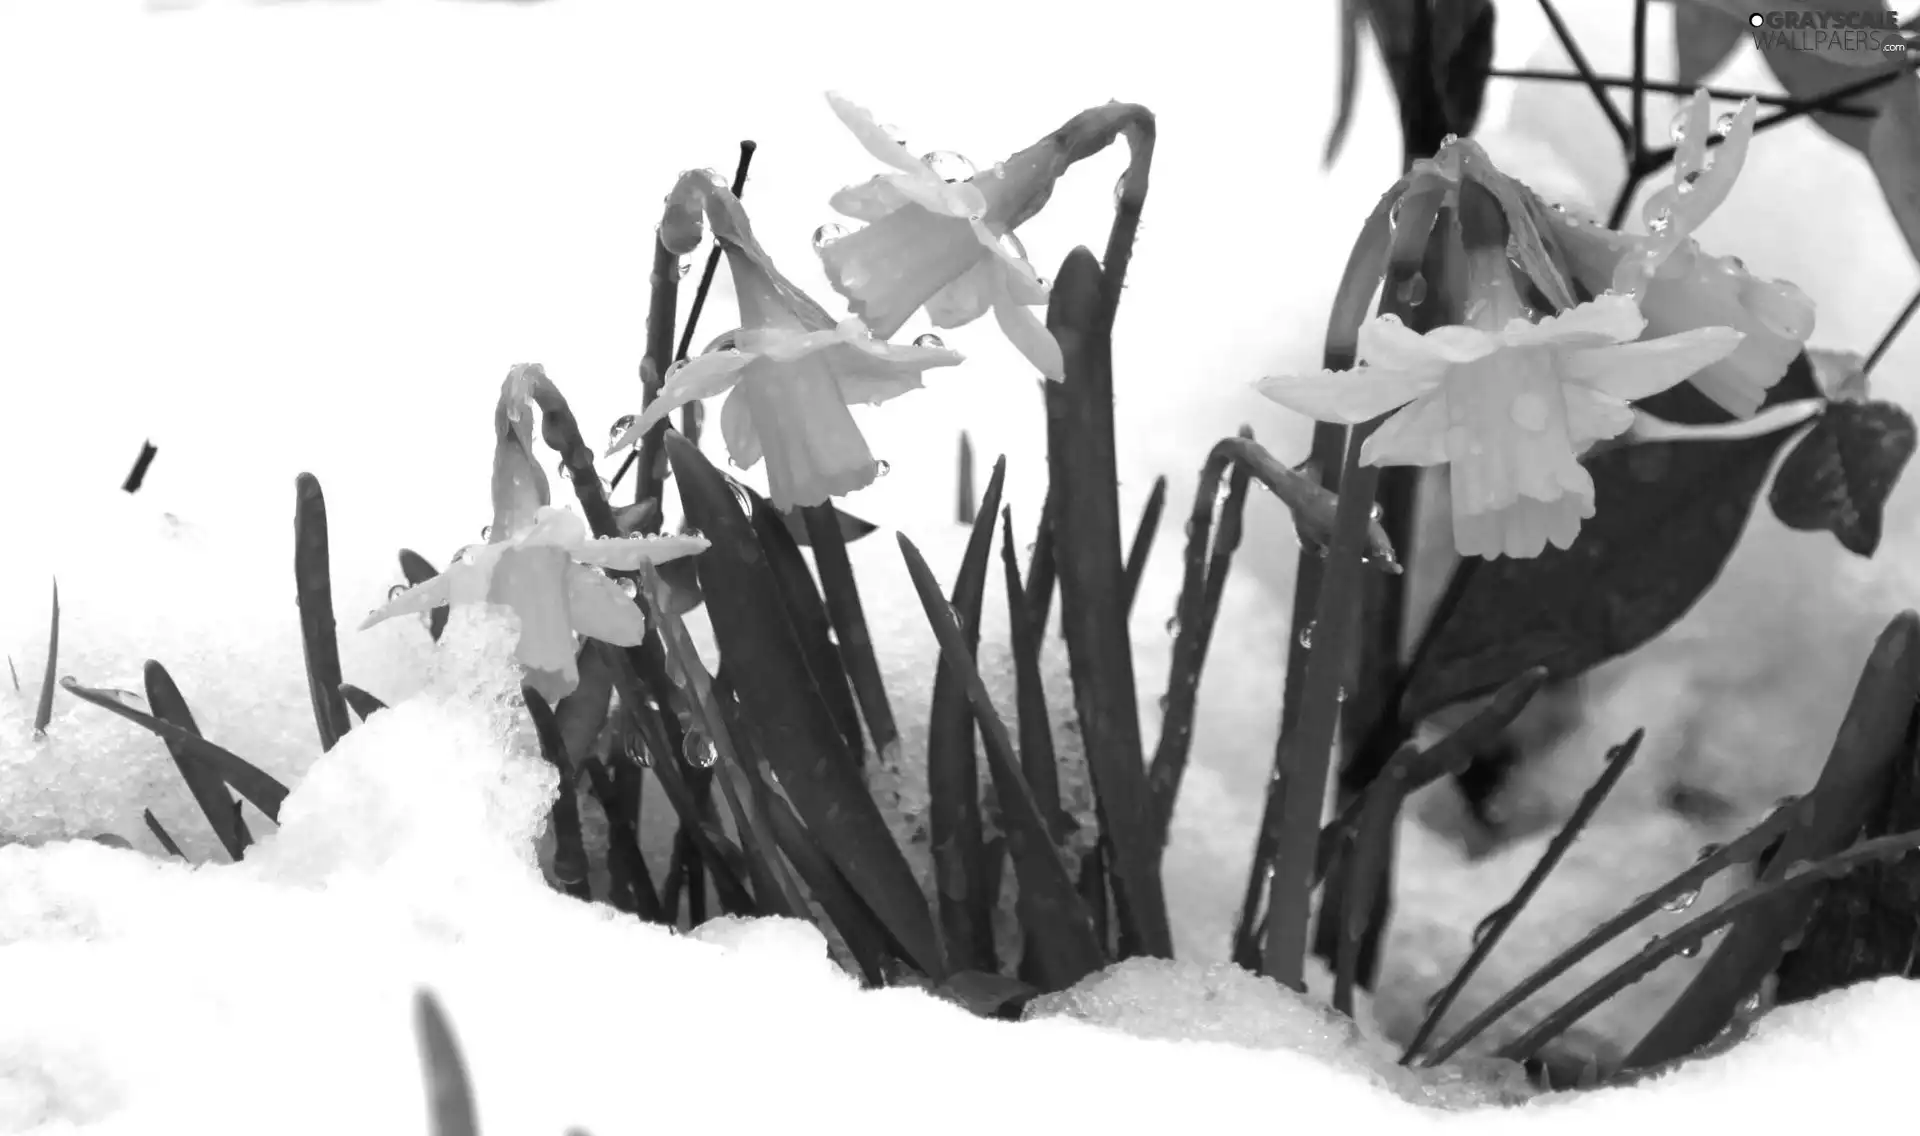 Daffodils, snow